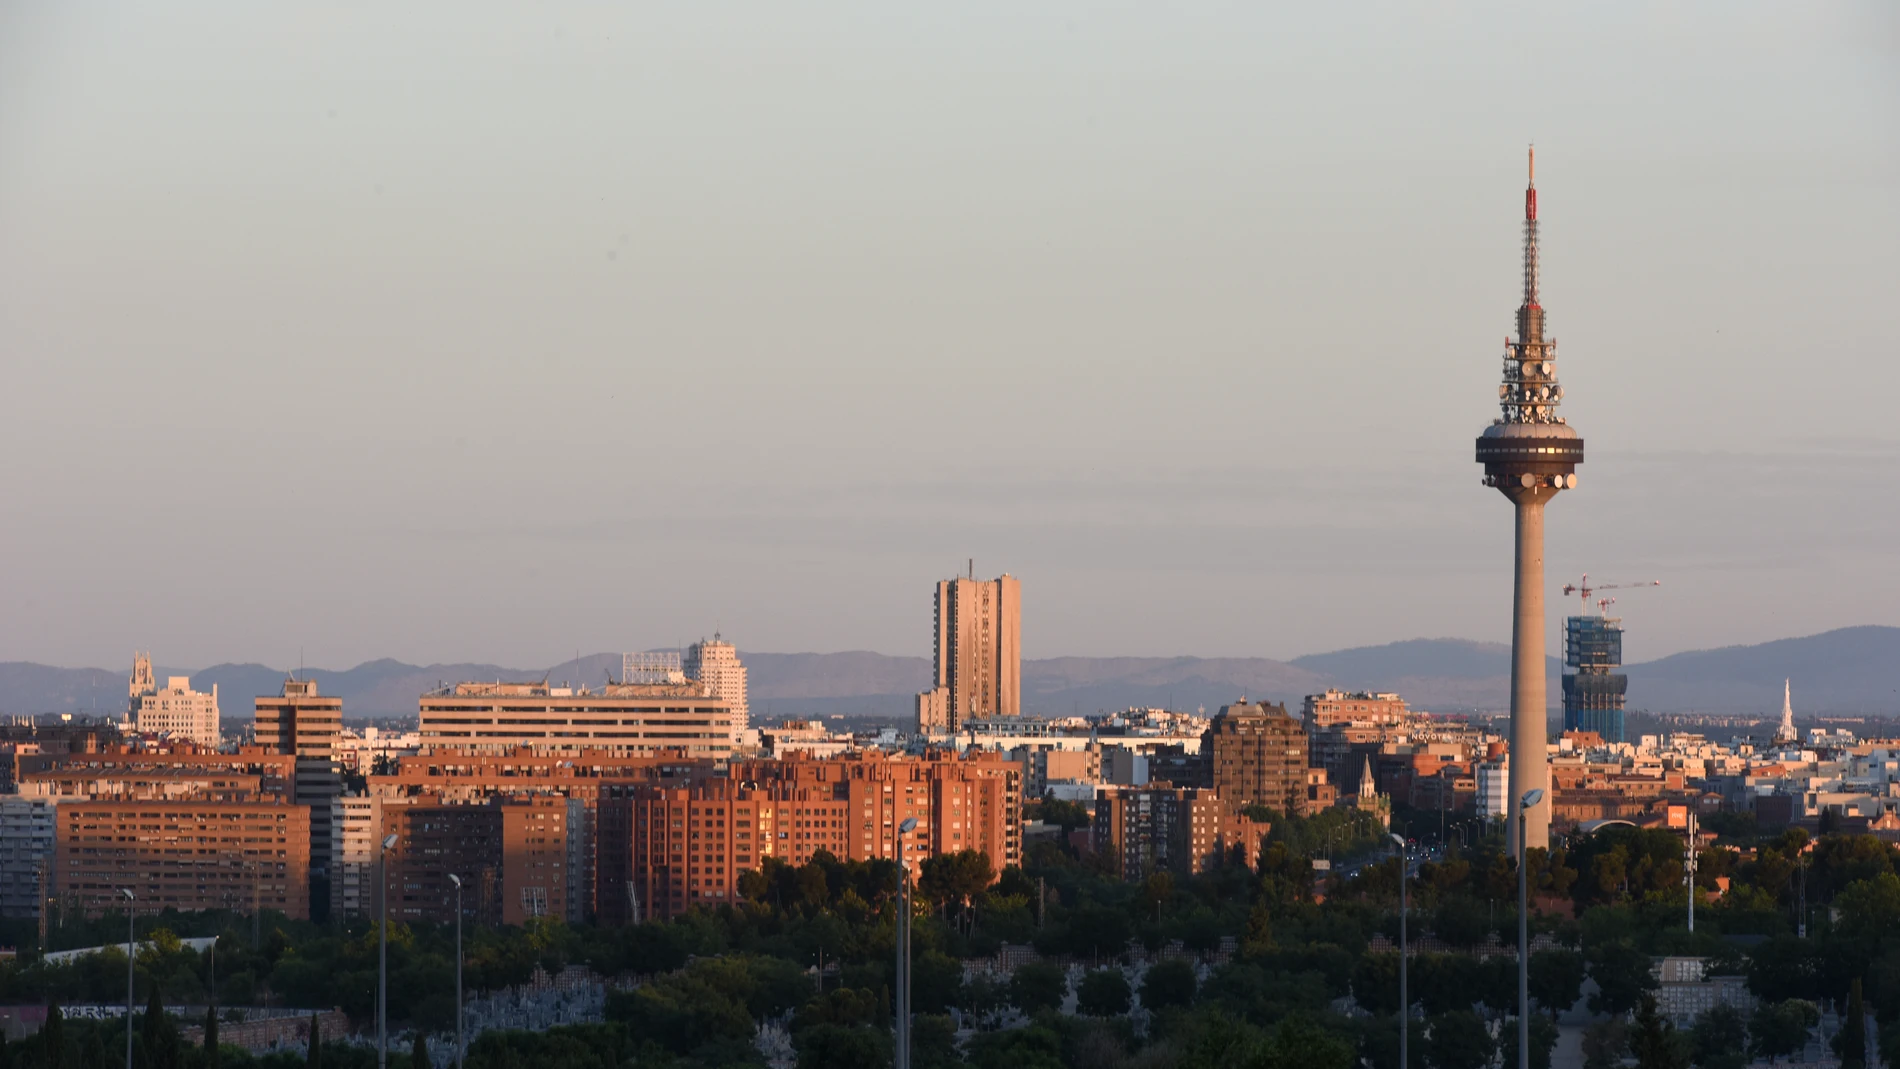 Vistas de Torrespaña, conocida como 'El Pirulí', desde el mirador inferior del Parque de la Cuña Verde de Latina, el día que da comienzo el verano 2022, a 21 de junio de 2022